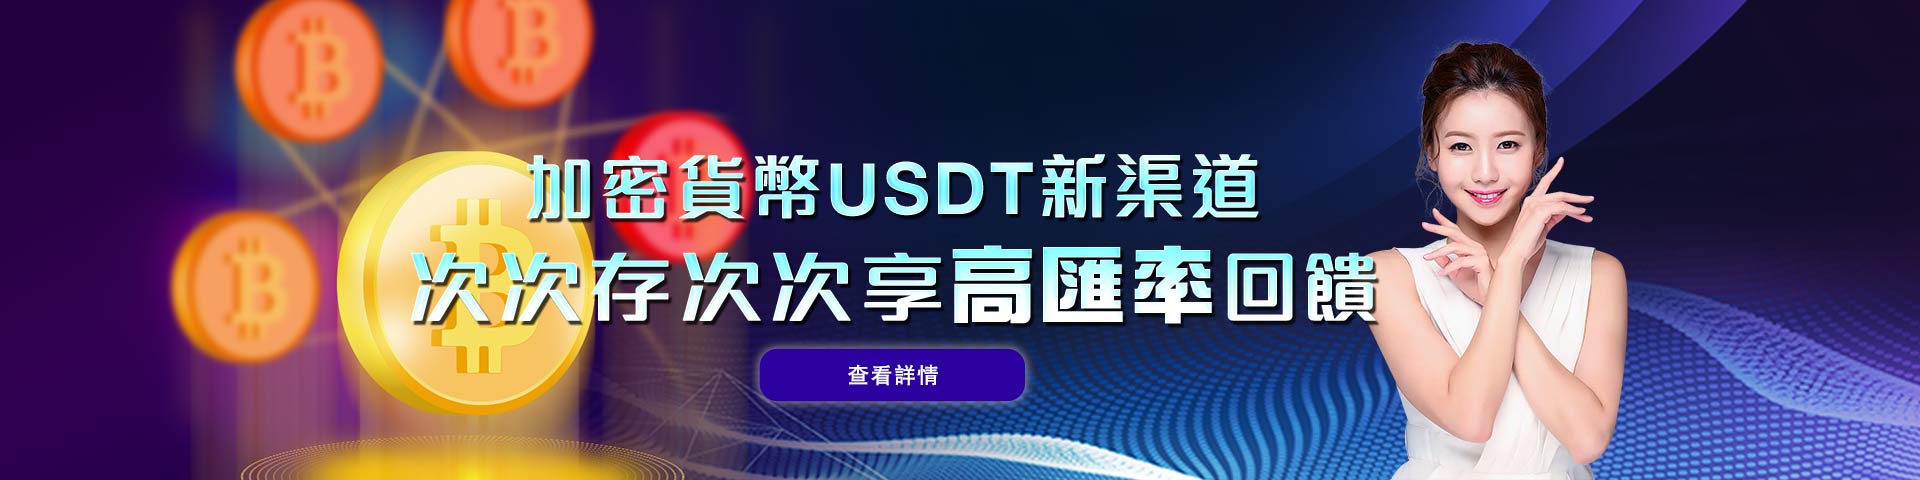 加密貨幣USDT新渠道  次次存次次享回饋